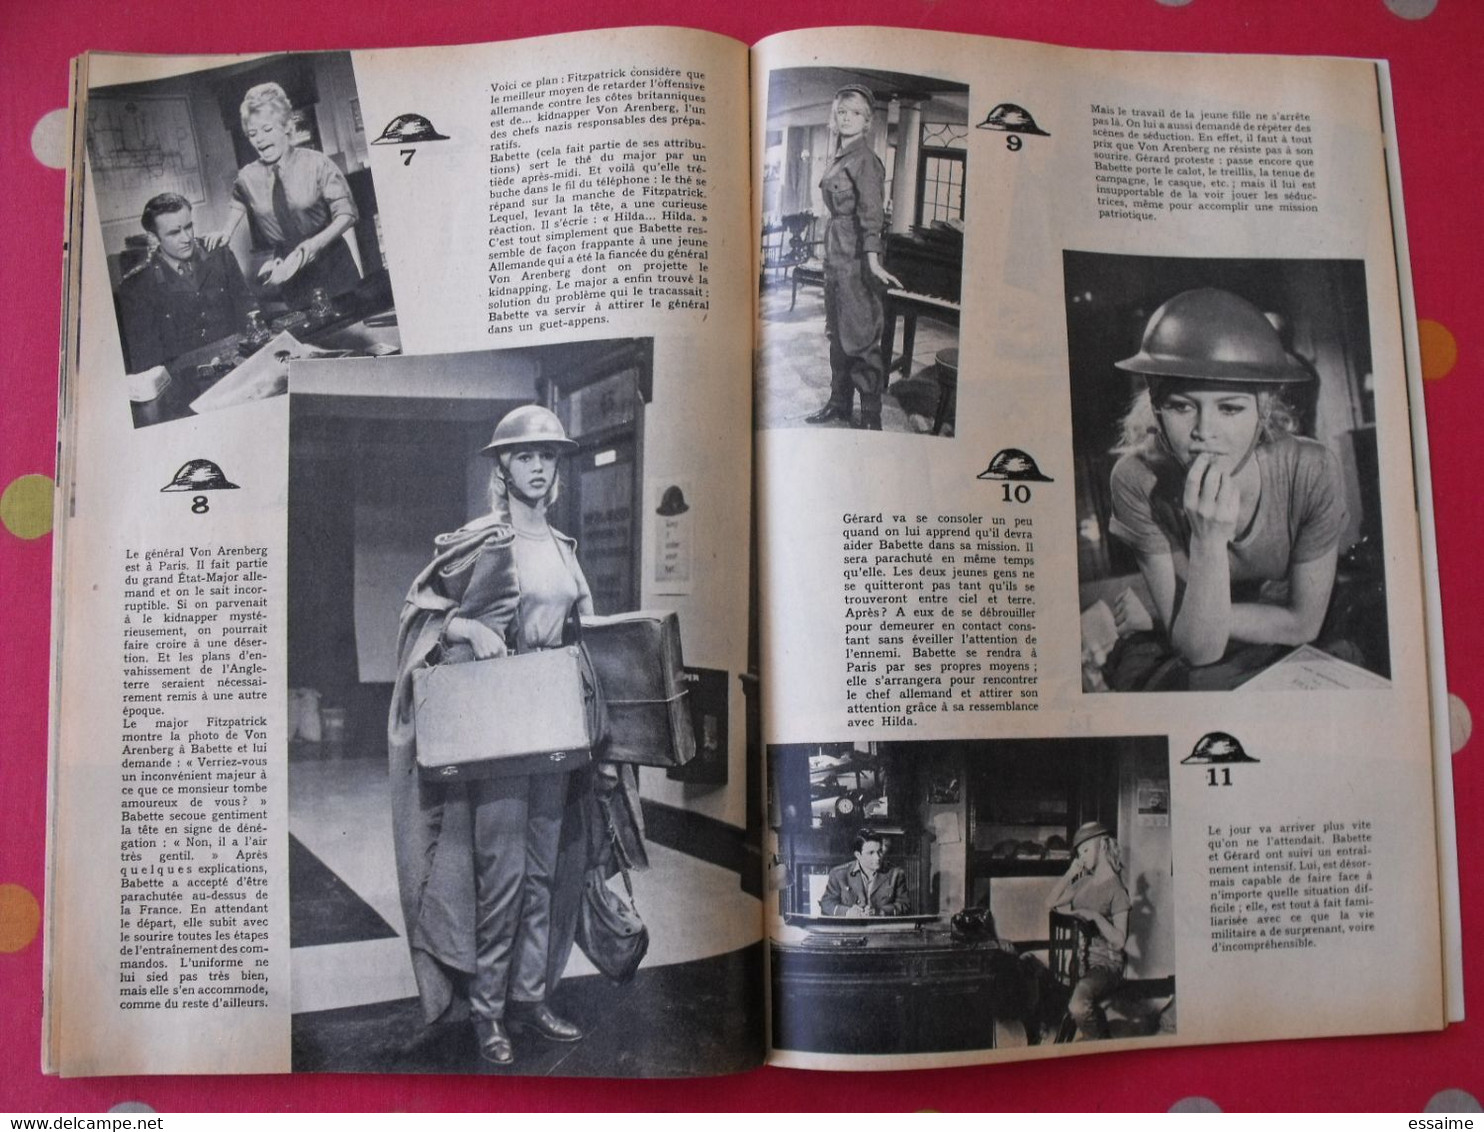 revue Jeunesse cinéma n° 19 de 1959. agnès laurent brigitte bardot marylin monroe leslie caron dufilho aznavour loren